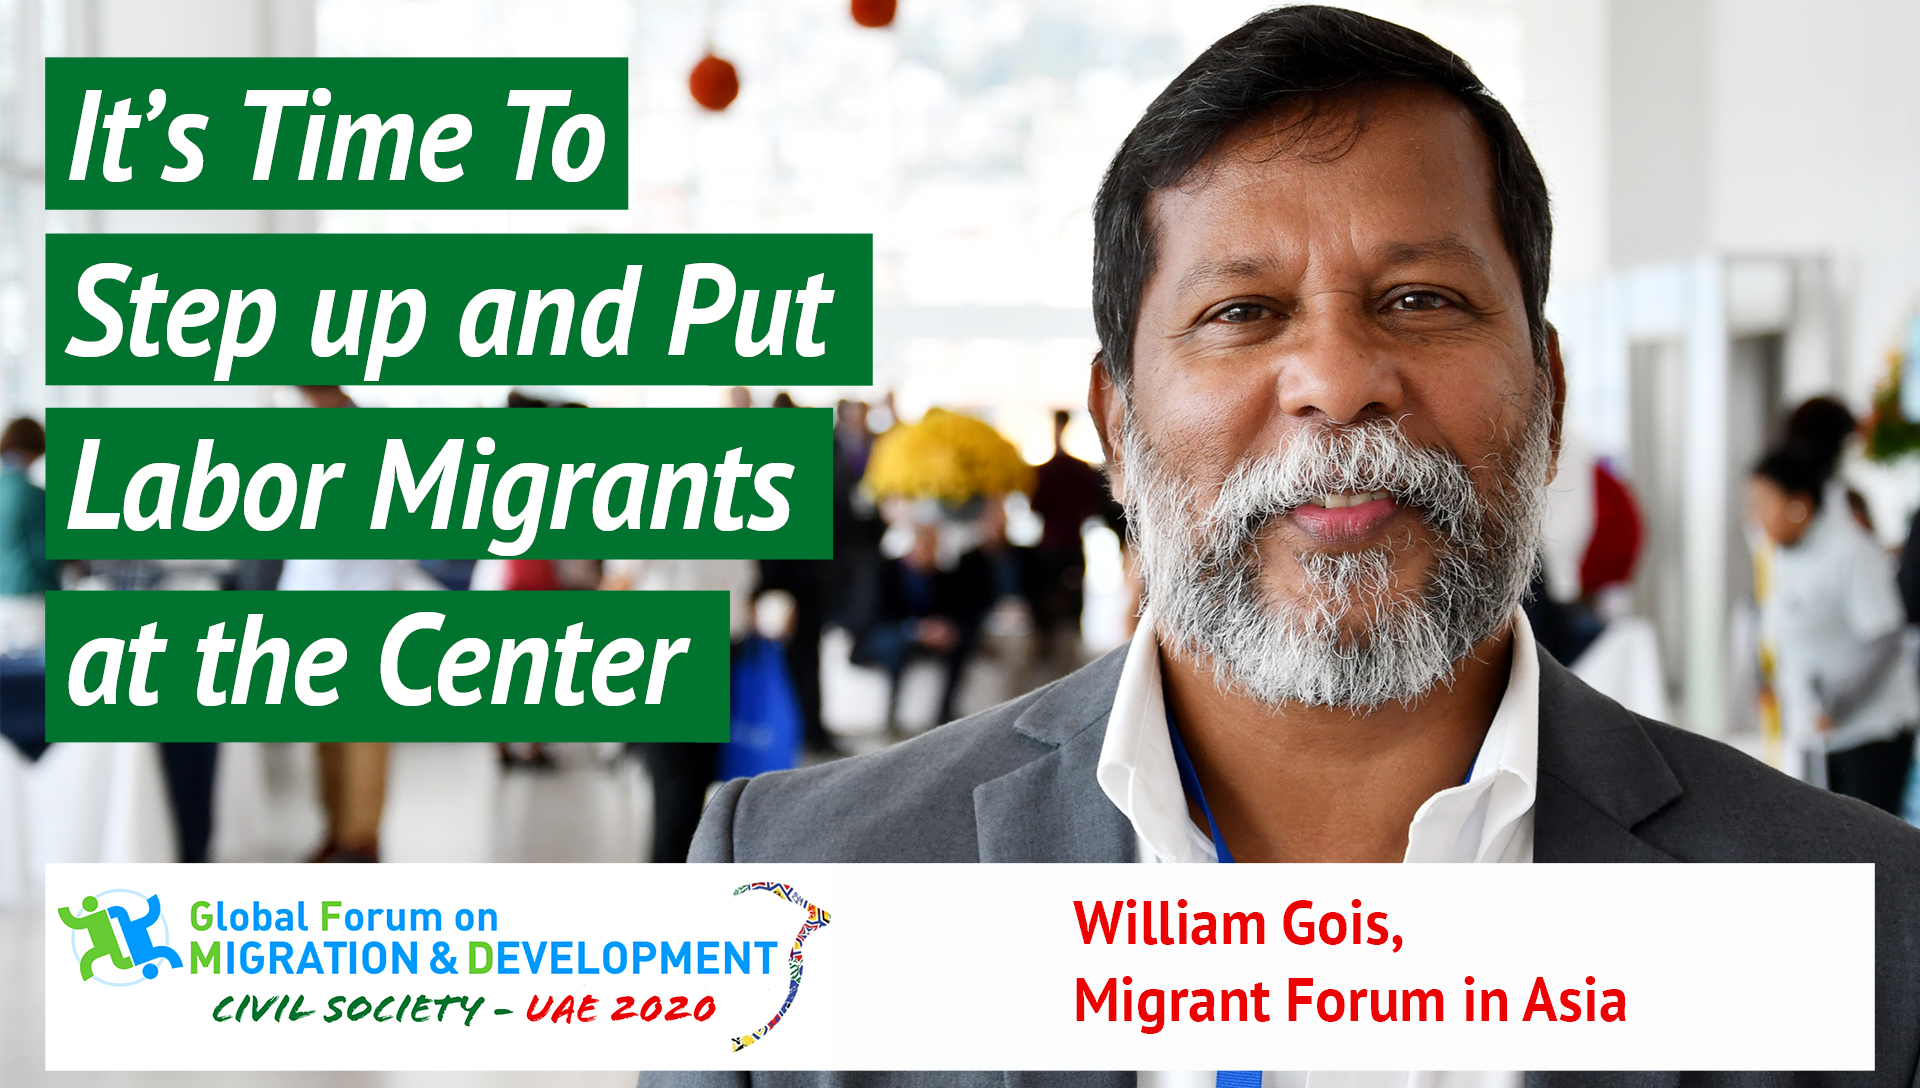 William Gois, Migrant Forum in Asia